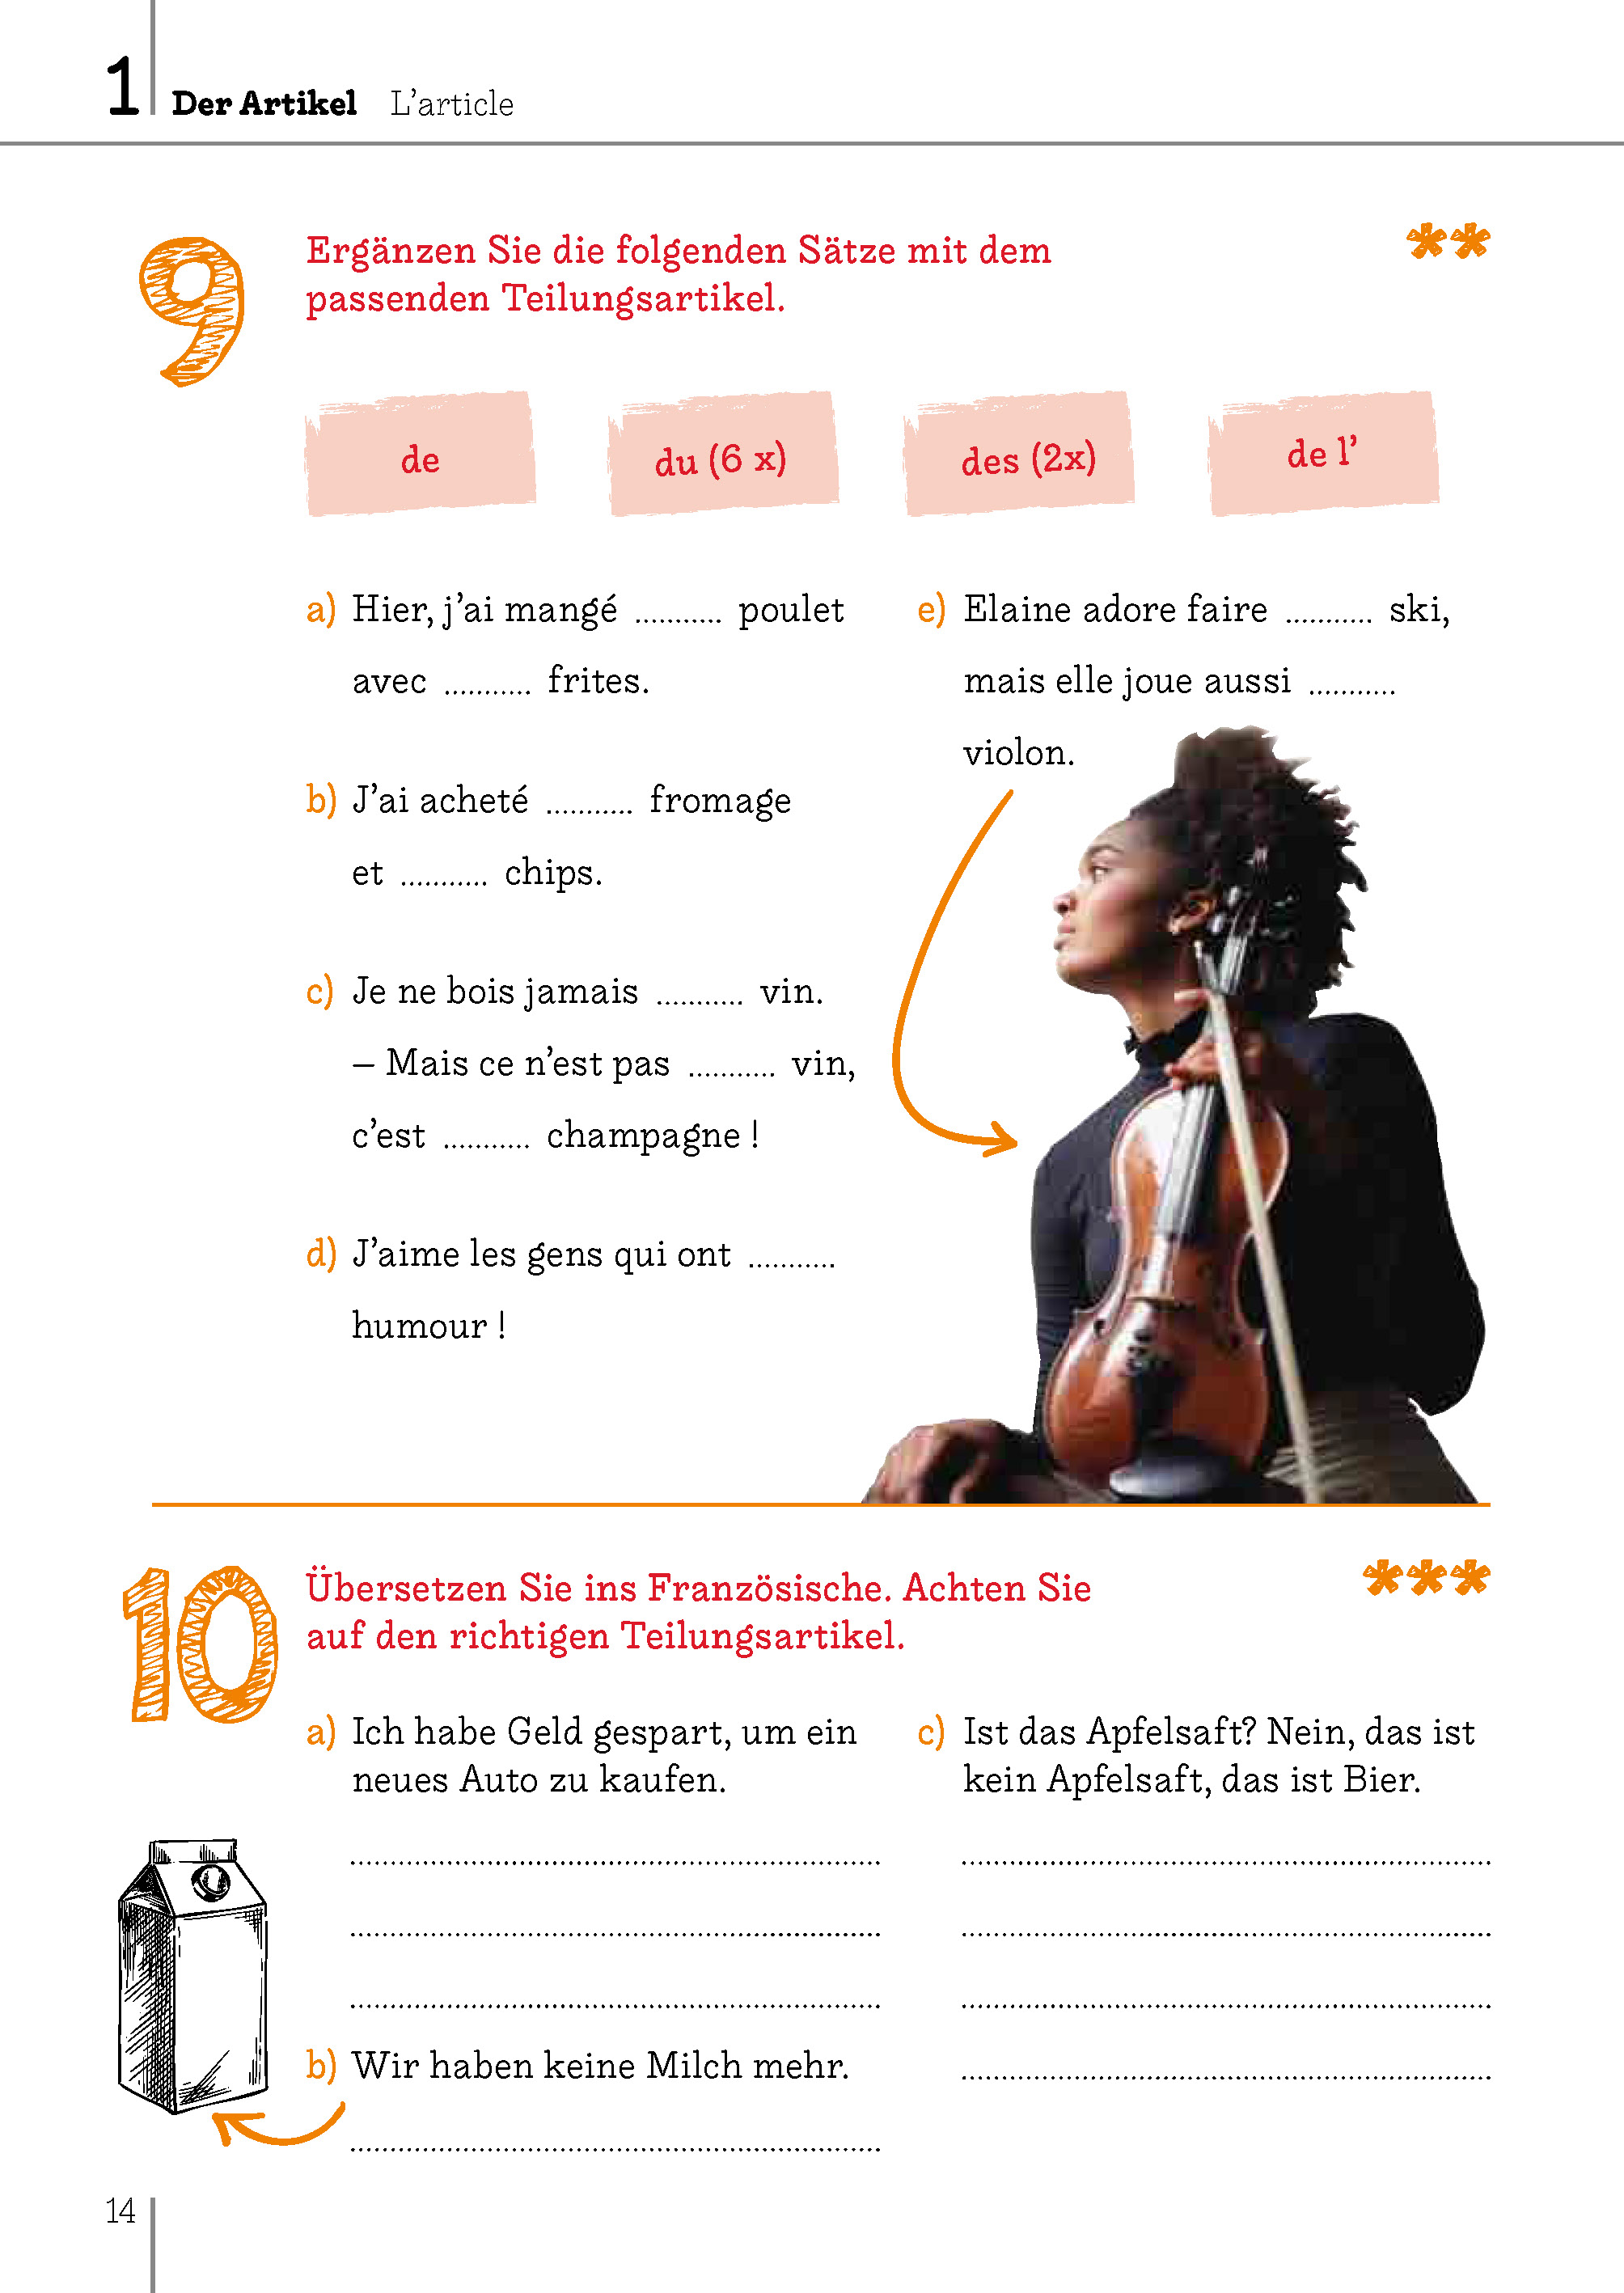 Langenscheidt Übungsbuch Grammatik Bild für Bild Französisch